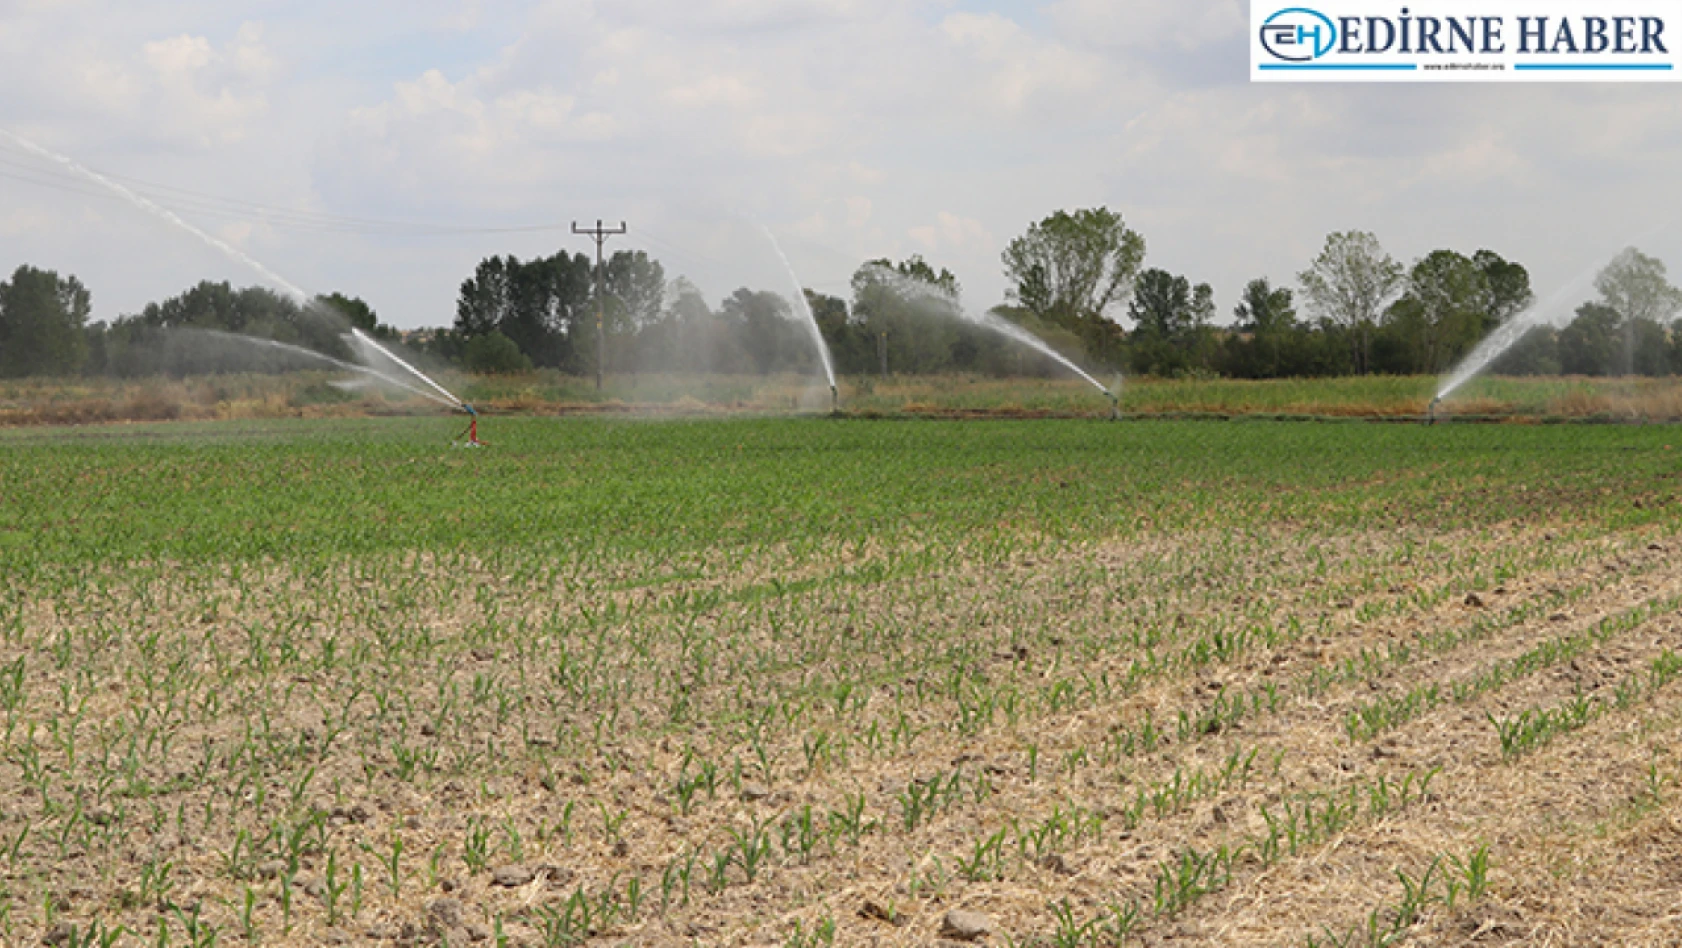 Edirne'de 22 bin 500 dekarlık tarım arazisi kapalı sistemle suya kavuşturuldu 